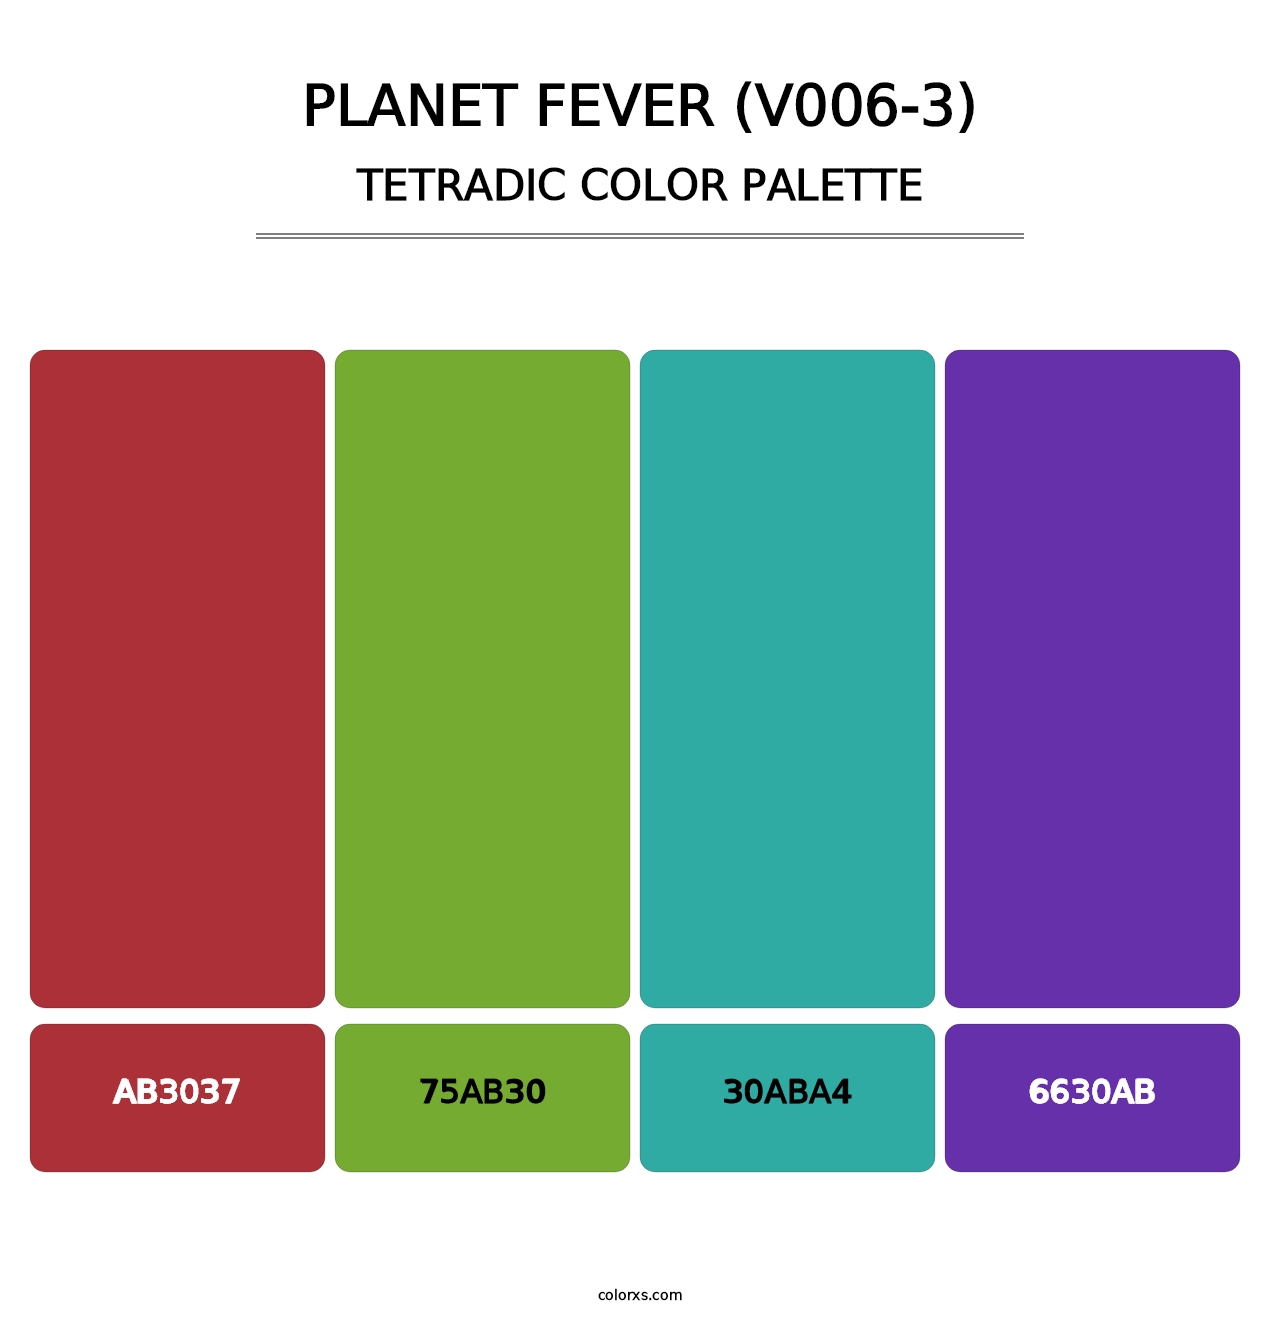 Planet Fever (V006-3) - Tetradic Color Palette